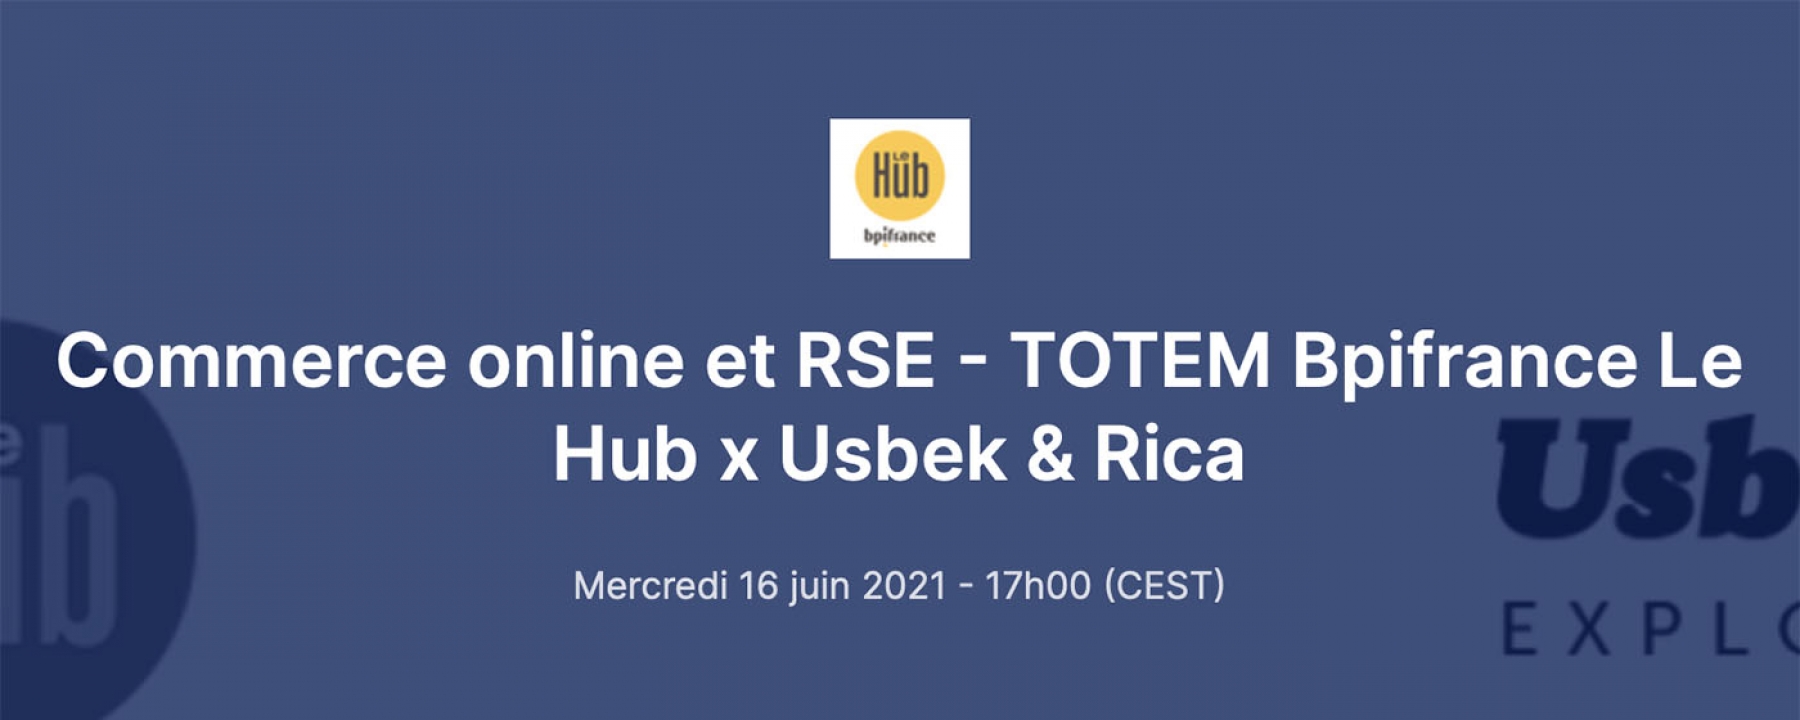 Commerce online et RSE - TOTEM le 16 juin 2021